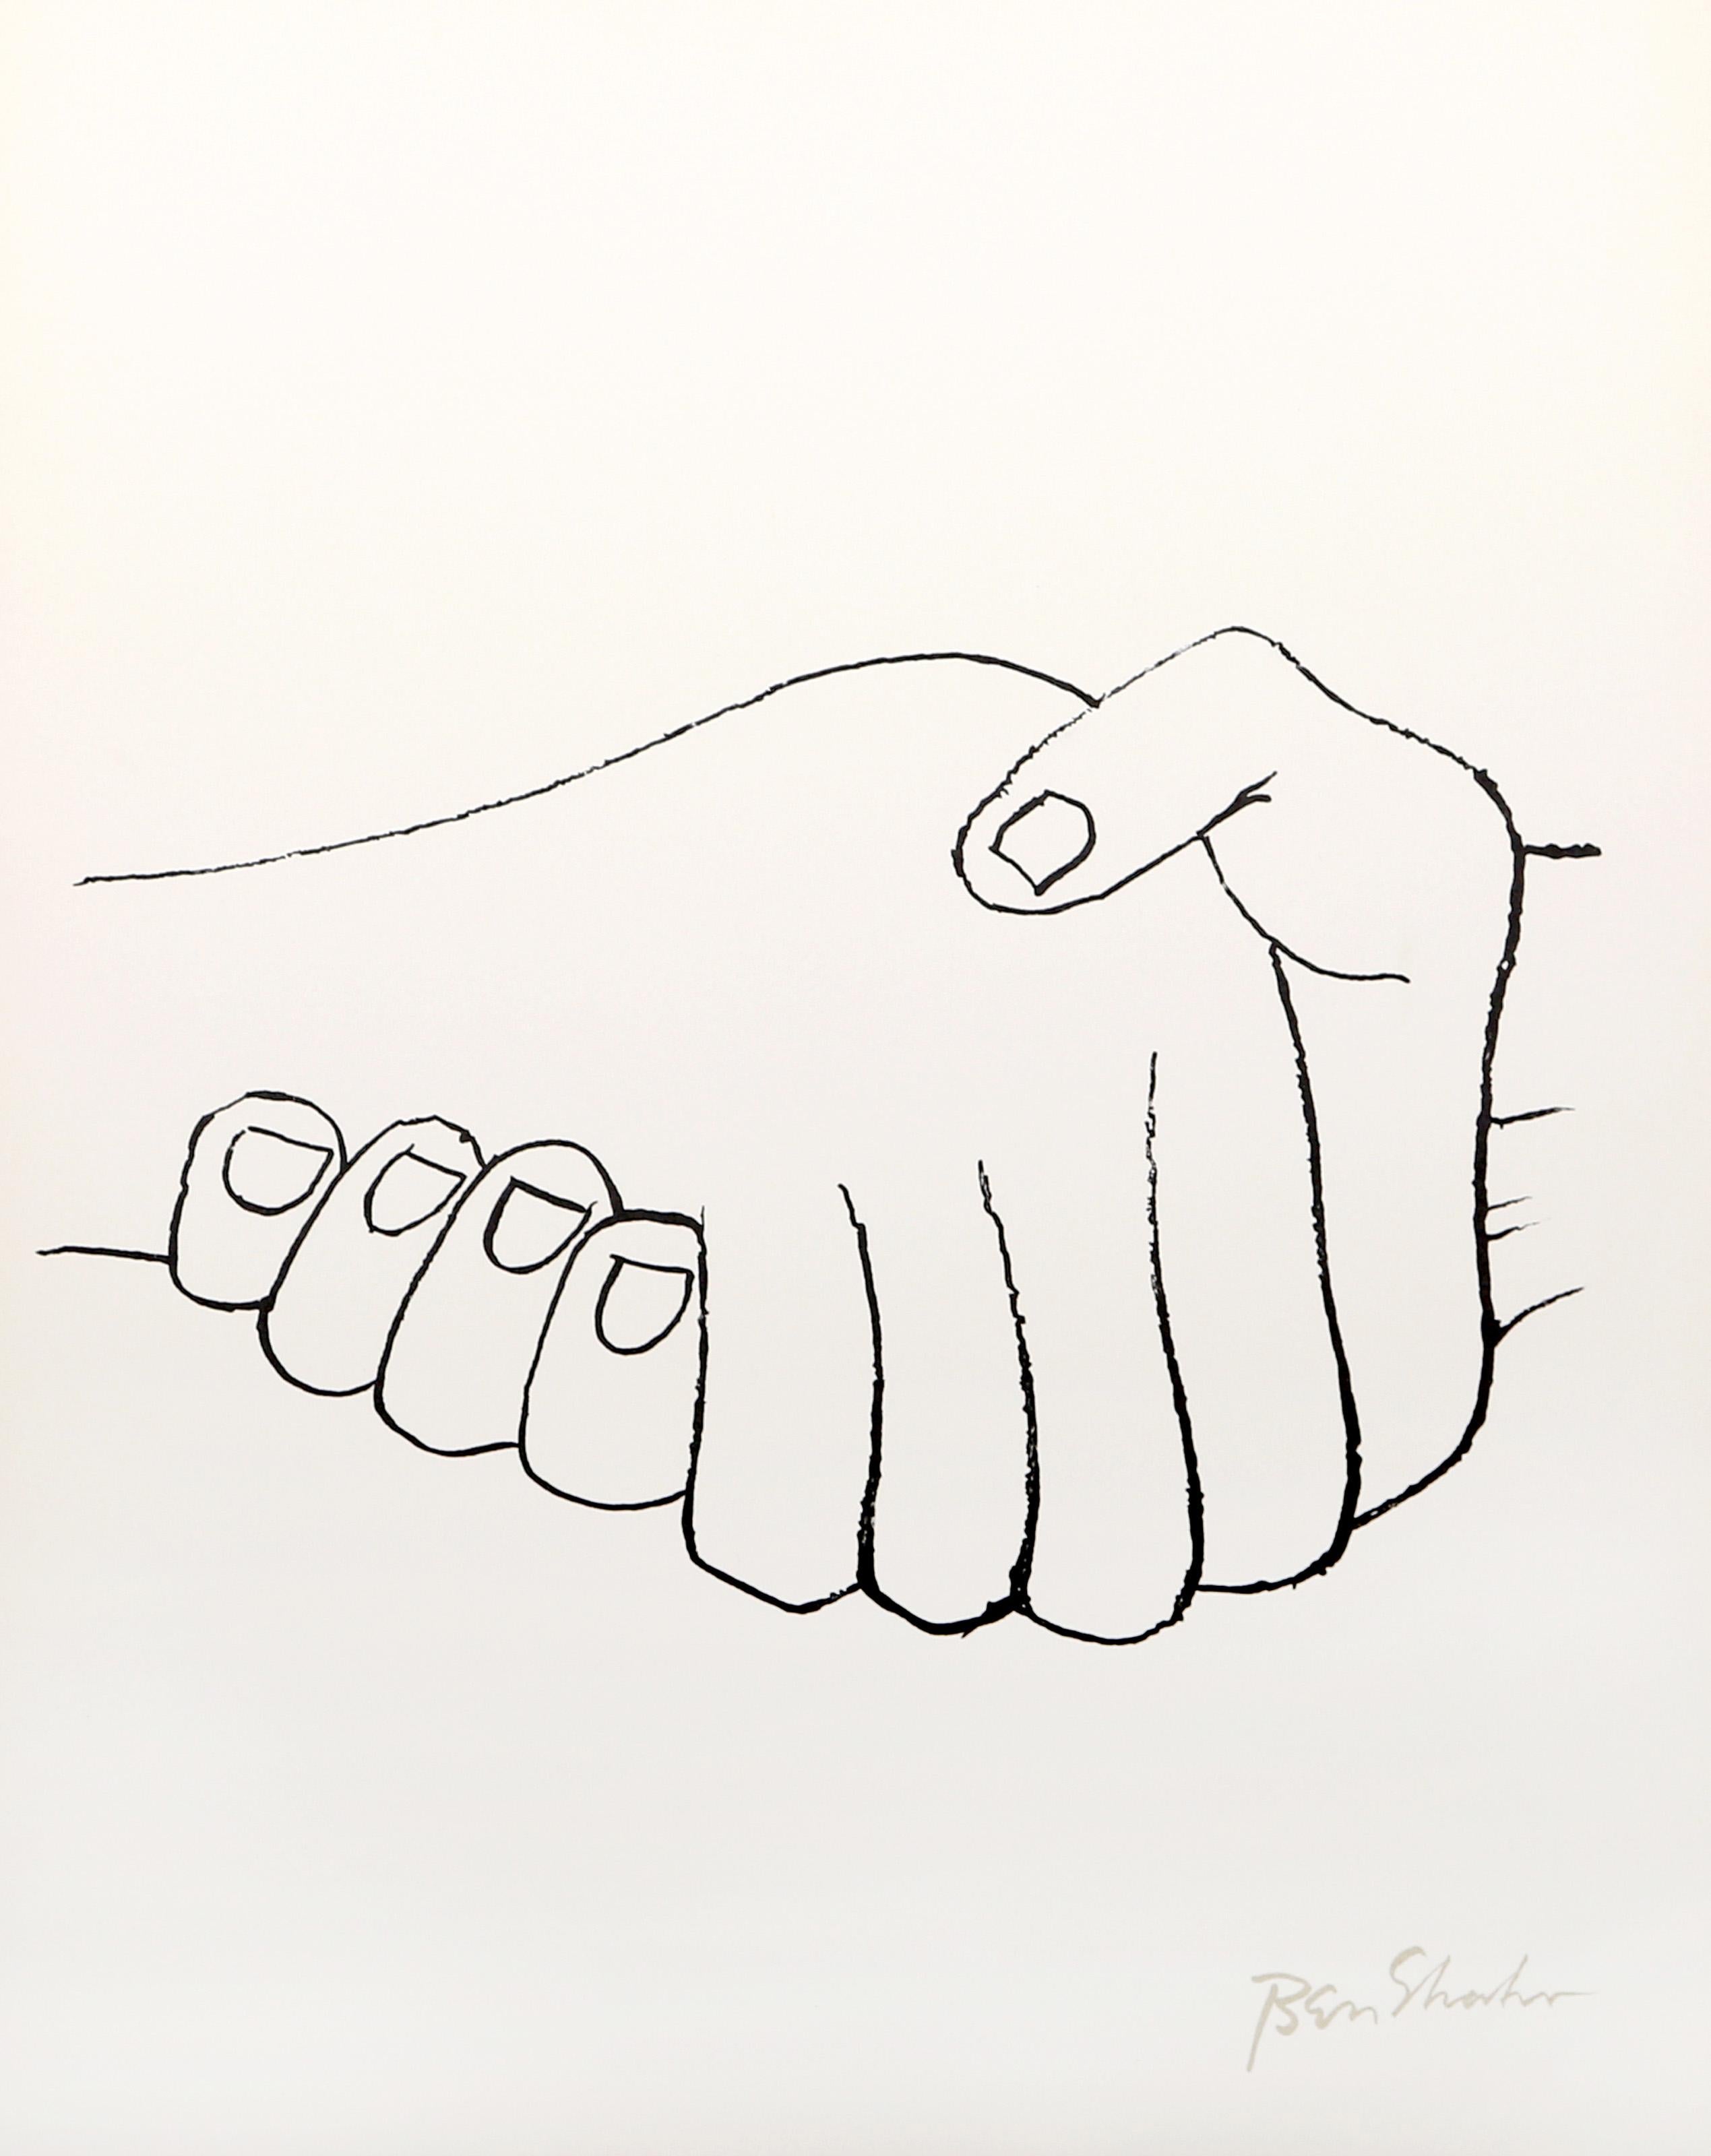 Künstler: Ben Shahn, Amerikaner (1898 - 1969)
Titel: Unerwartete Begegnungen aus dem Rilke-Portfolio
Jahr: 1968
Medium: Lithographie auf Arches, in der Platte signiert
Auflage: 750
Größe: 22,5 x 17,75 Zoll (57,15 x 45,09 cm)

Druckerei: Atelier